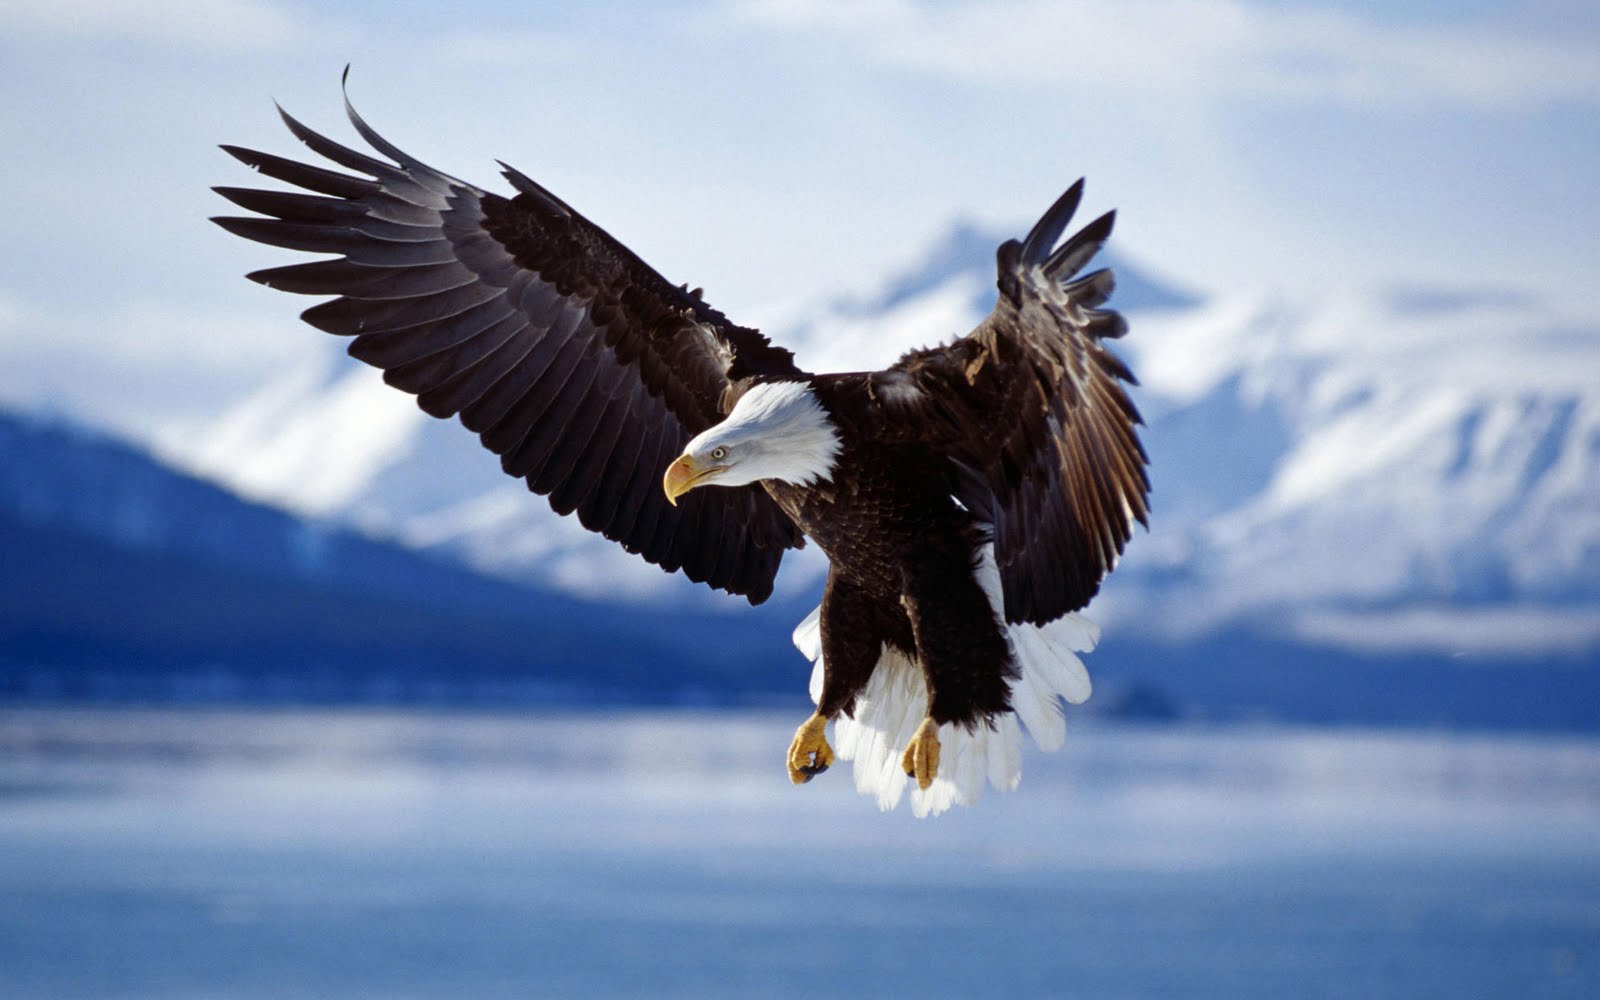 http://4.bp.blogspot.com/--O-wpxSB6us/Th8nuWiaKLI/AAAAAAAAACM/ZrB9ns87ukA/s1600/bald_eagle_in_flight_alaska-wide.jpg